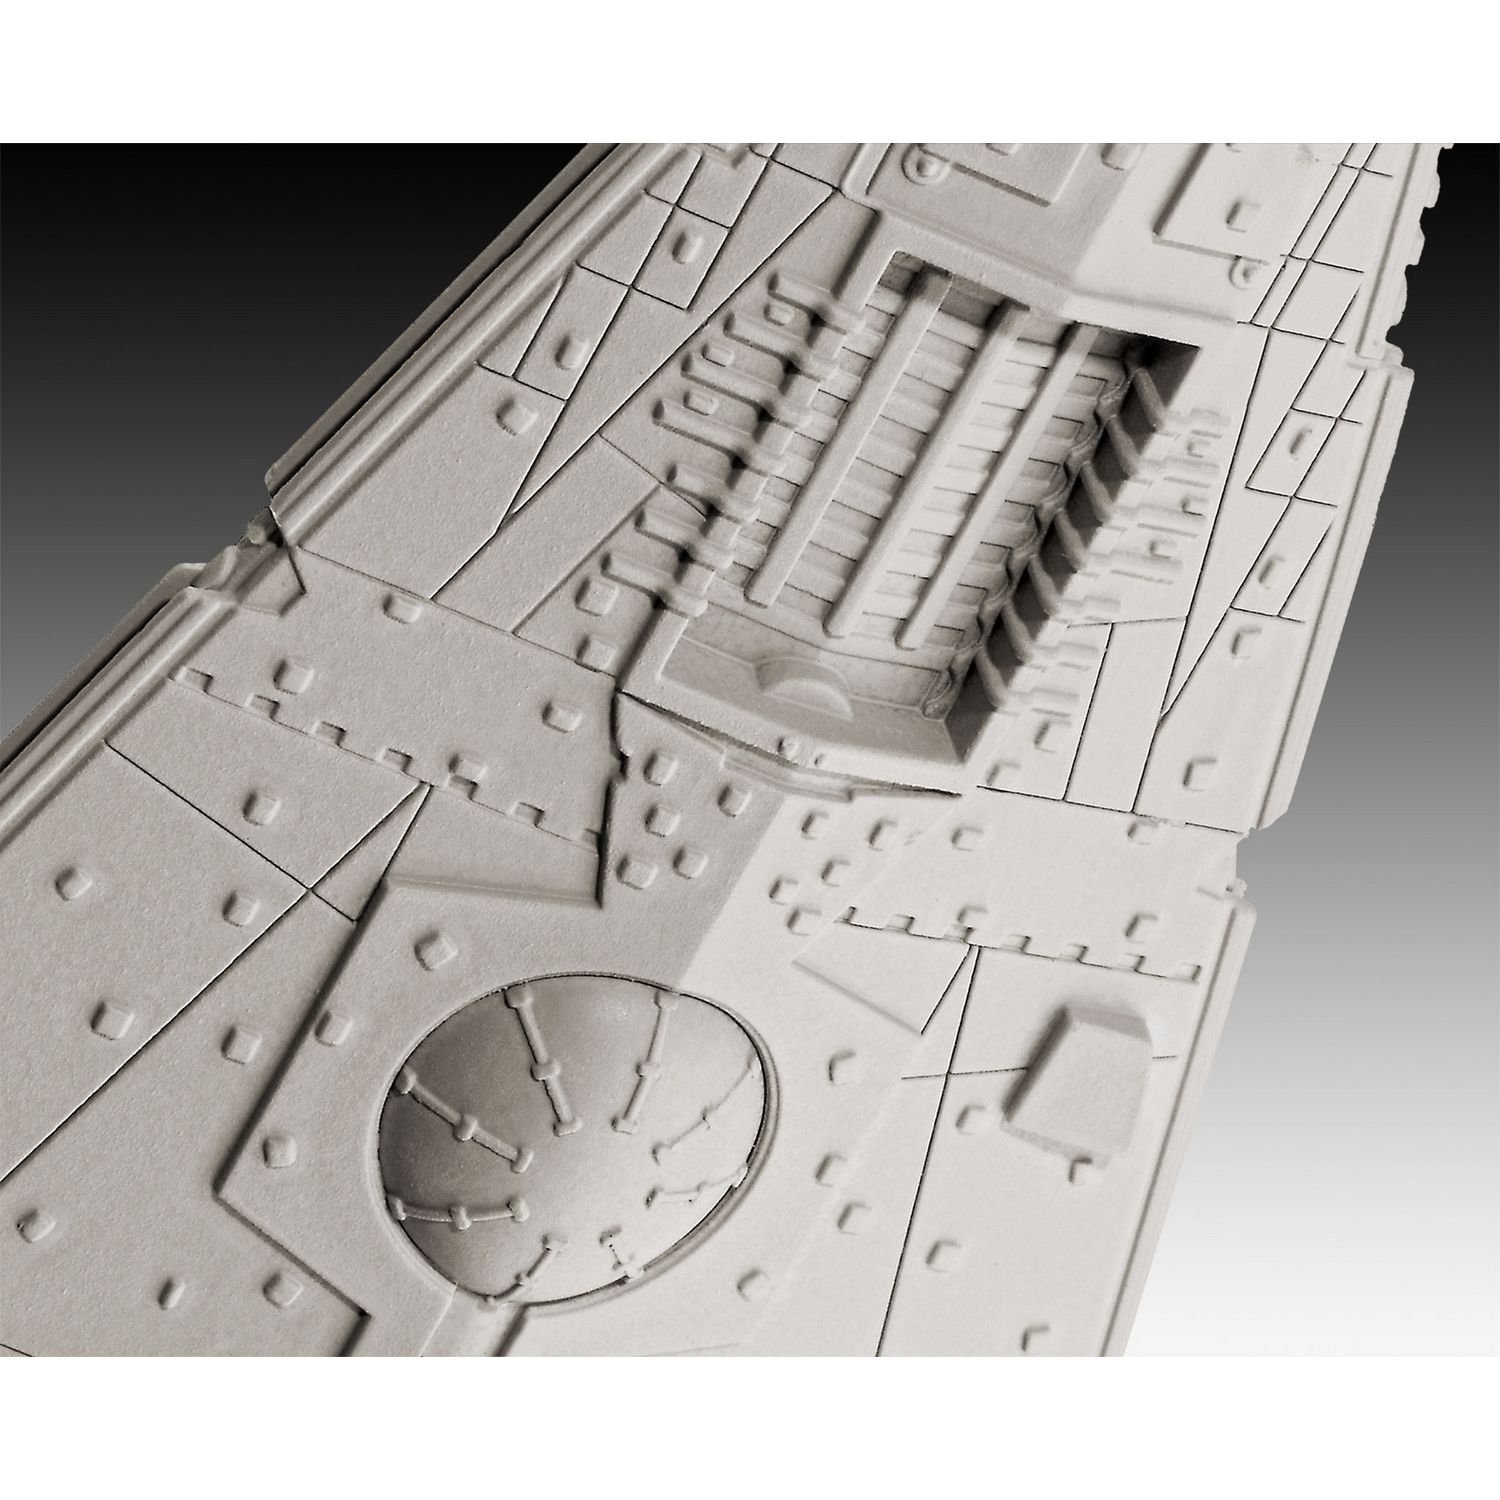 Сборная модель Revell Космический корабль Imperial Star Destroyer, уровень 3, масштаб 1:12300, 21 деталь (RVL-03609) - фото 4